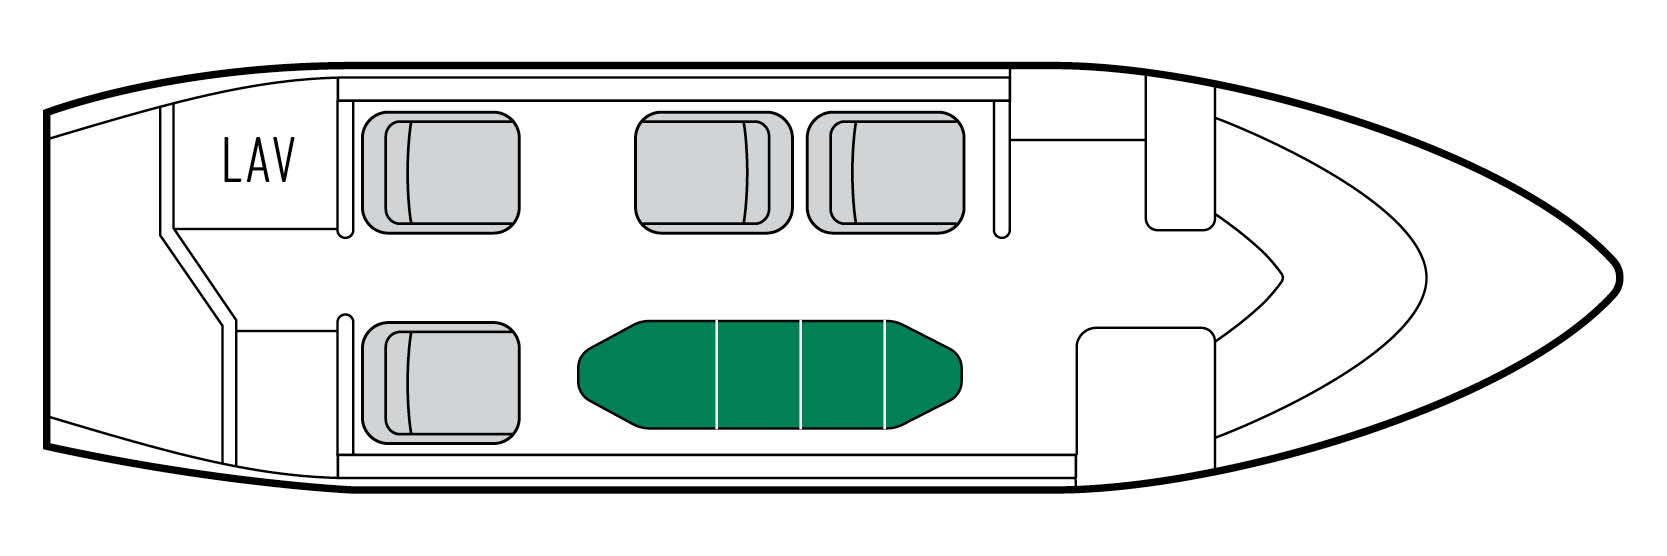 Learjet 60 seat map